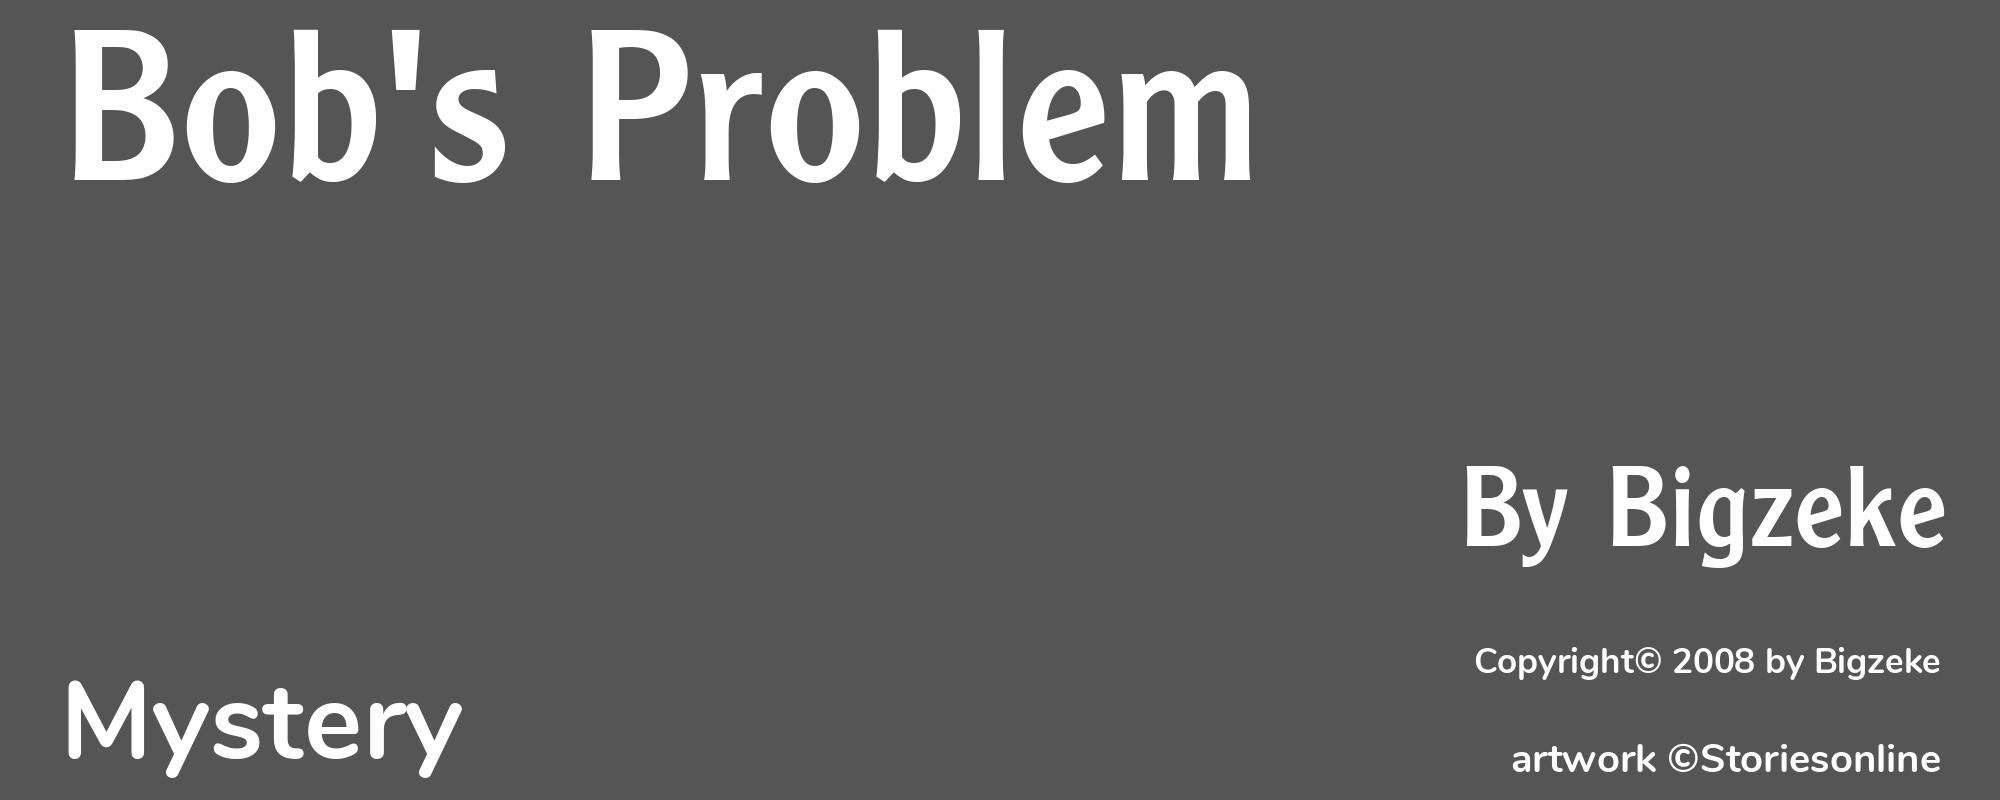 Bob's Problem - Cover